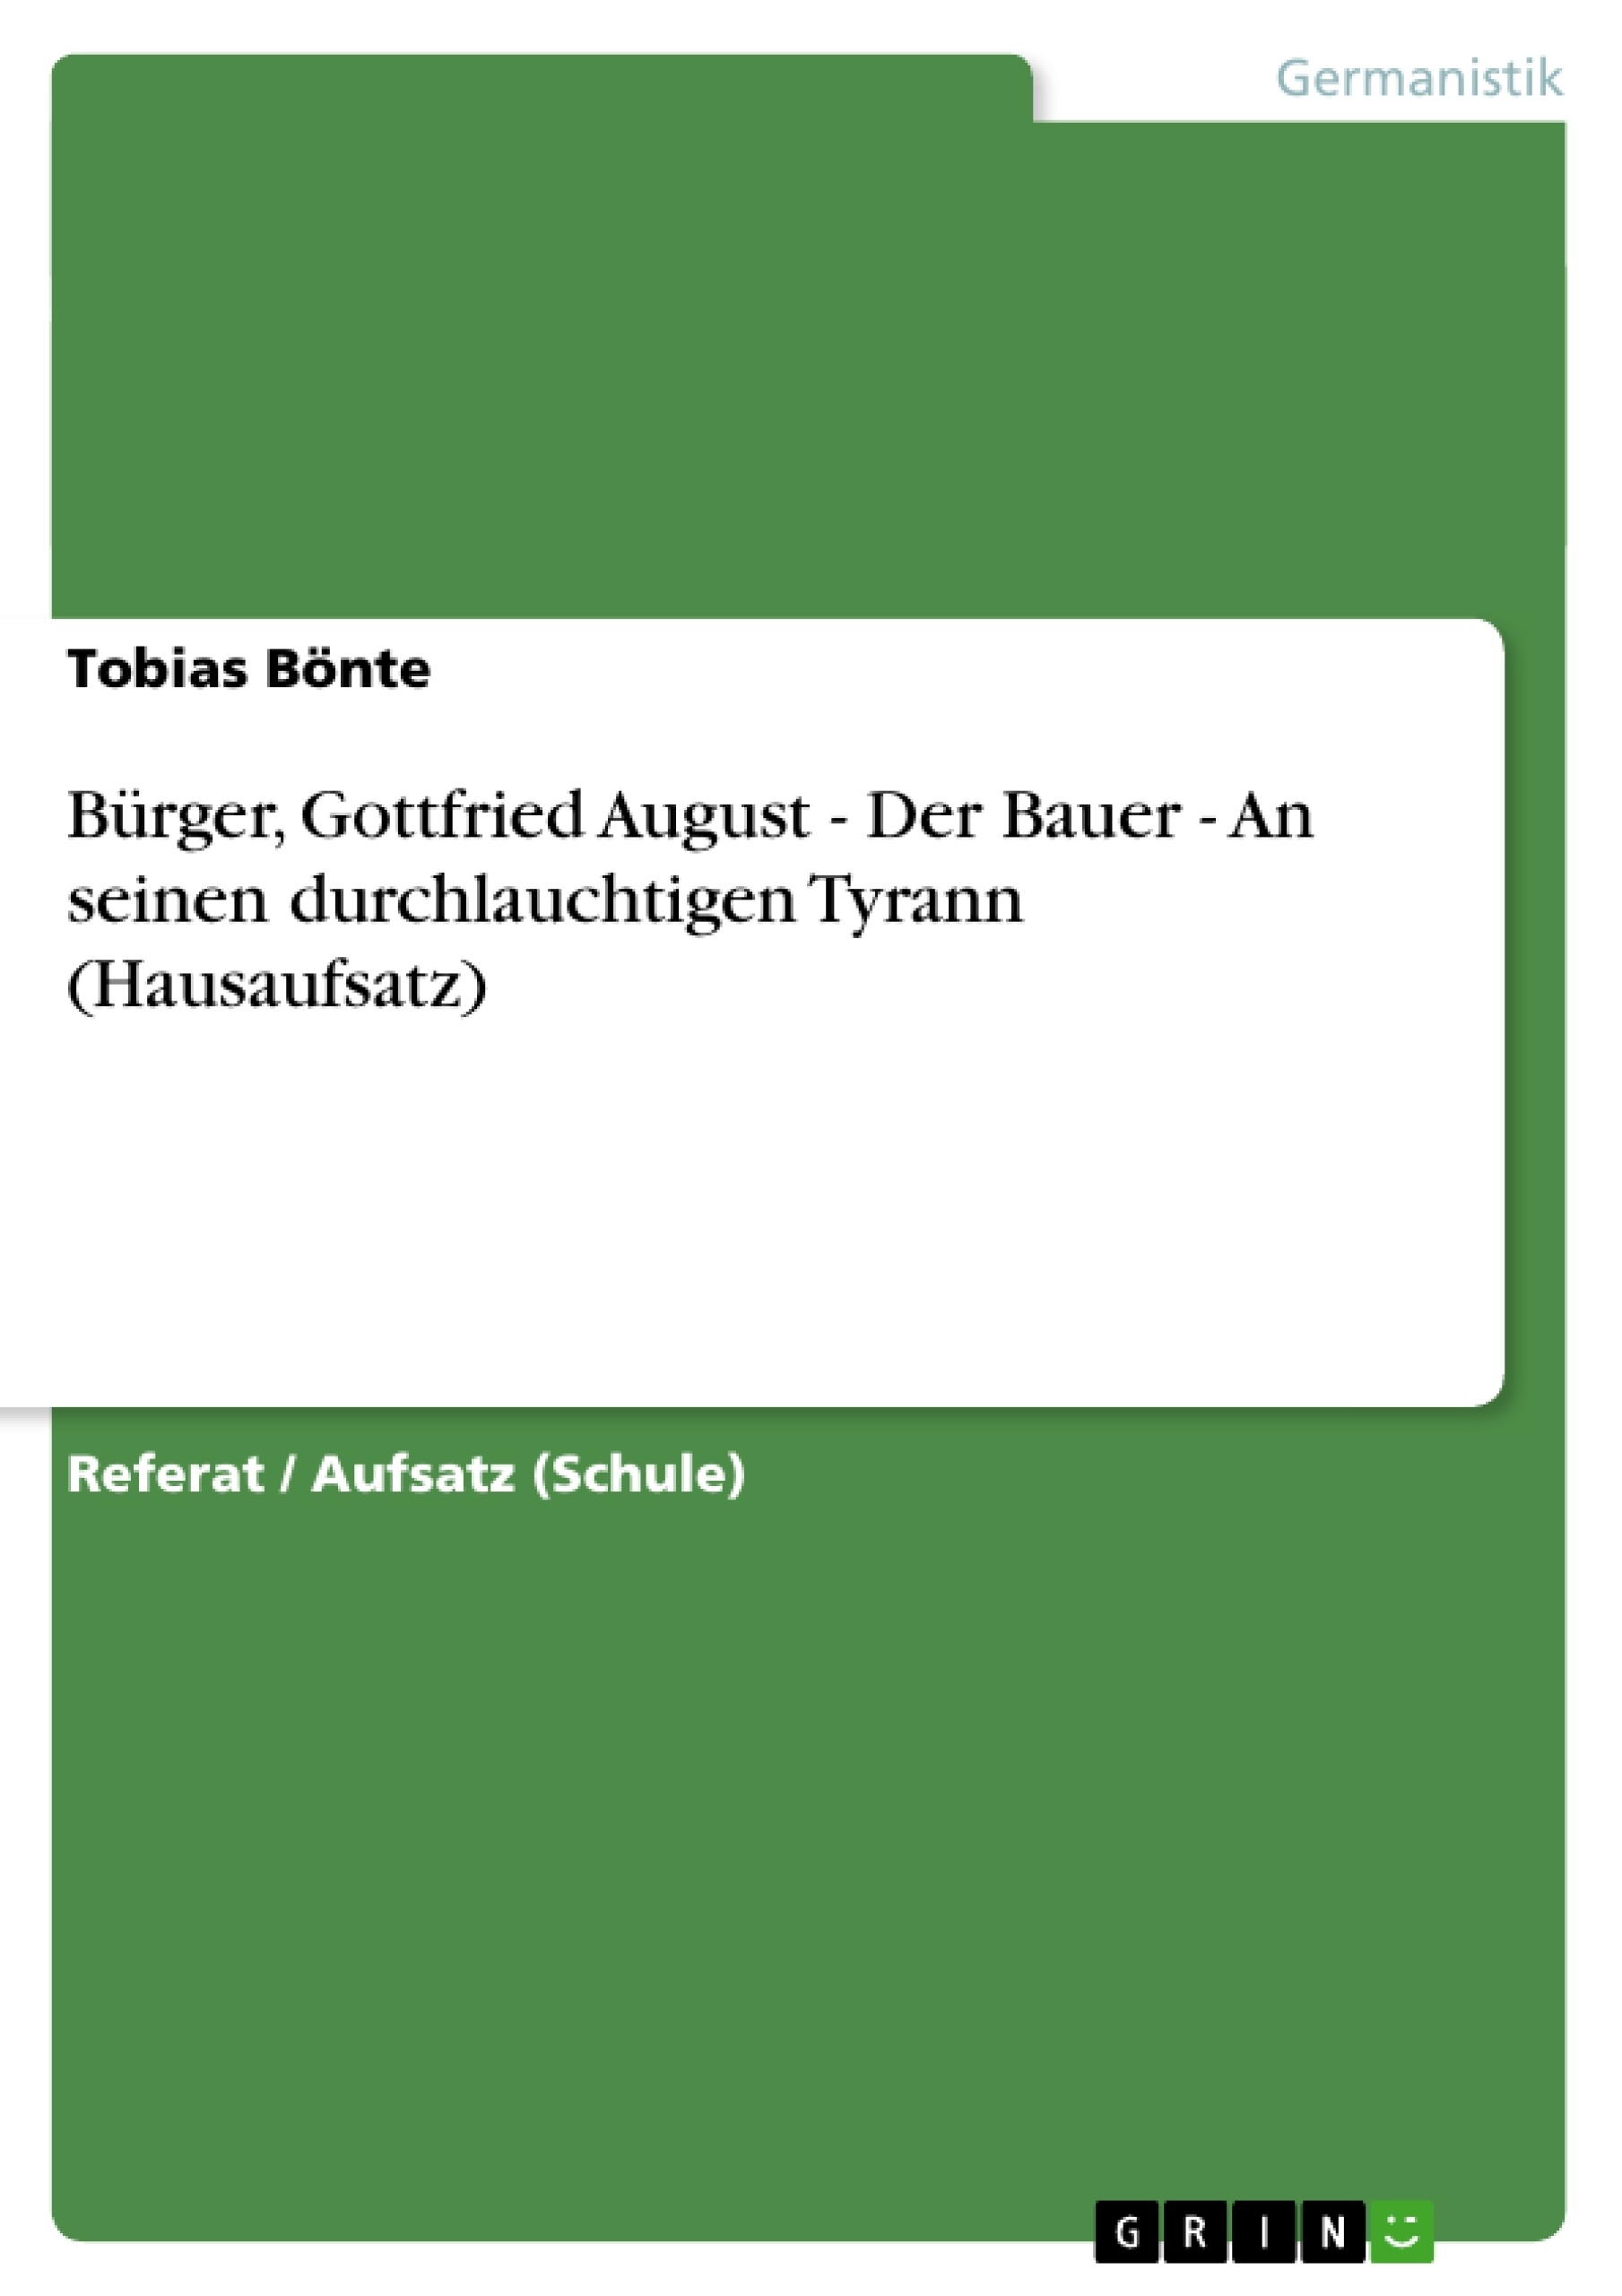 Titre: Bürger, Gottfried August - Der Bauer - An seinen durchlauchtigen Tyrann (Hausaufsatz)